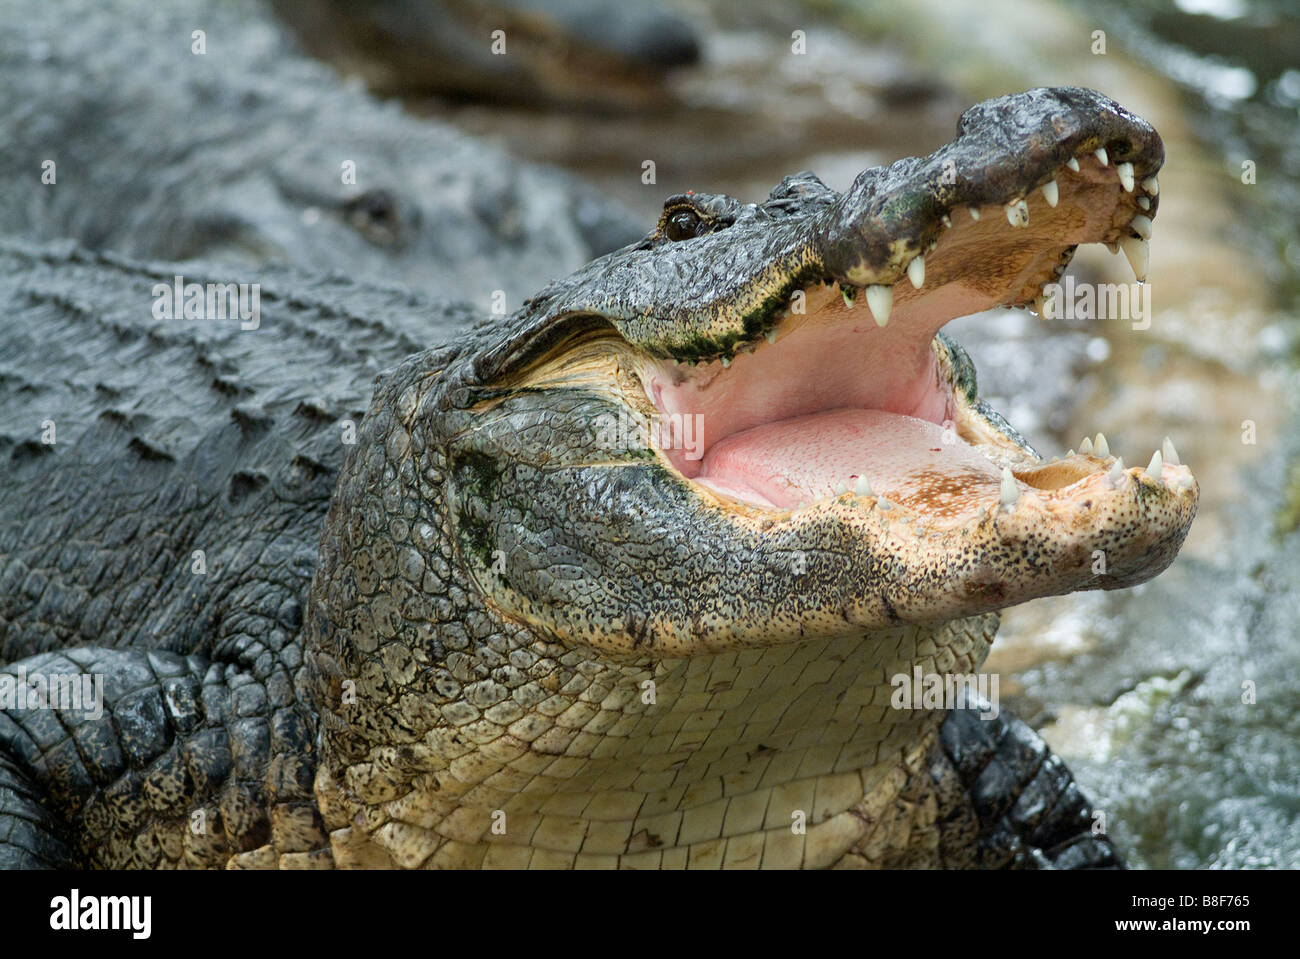 American Alligator Alligator mississippiensis con la boca abierta mostrando los dientes Florida Foto de stock